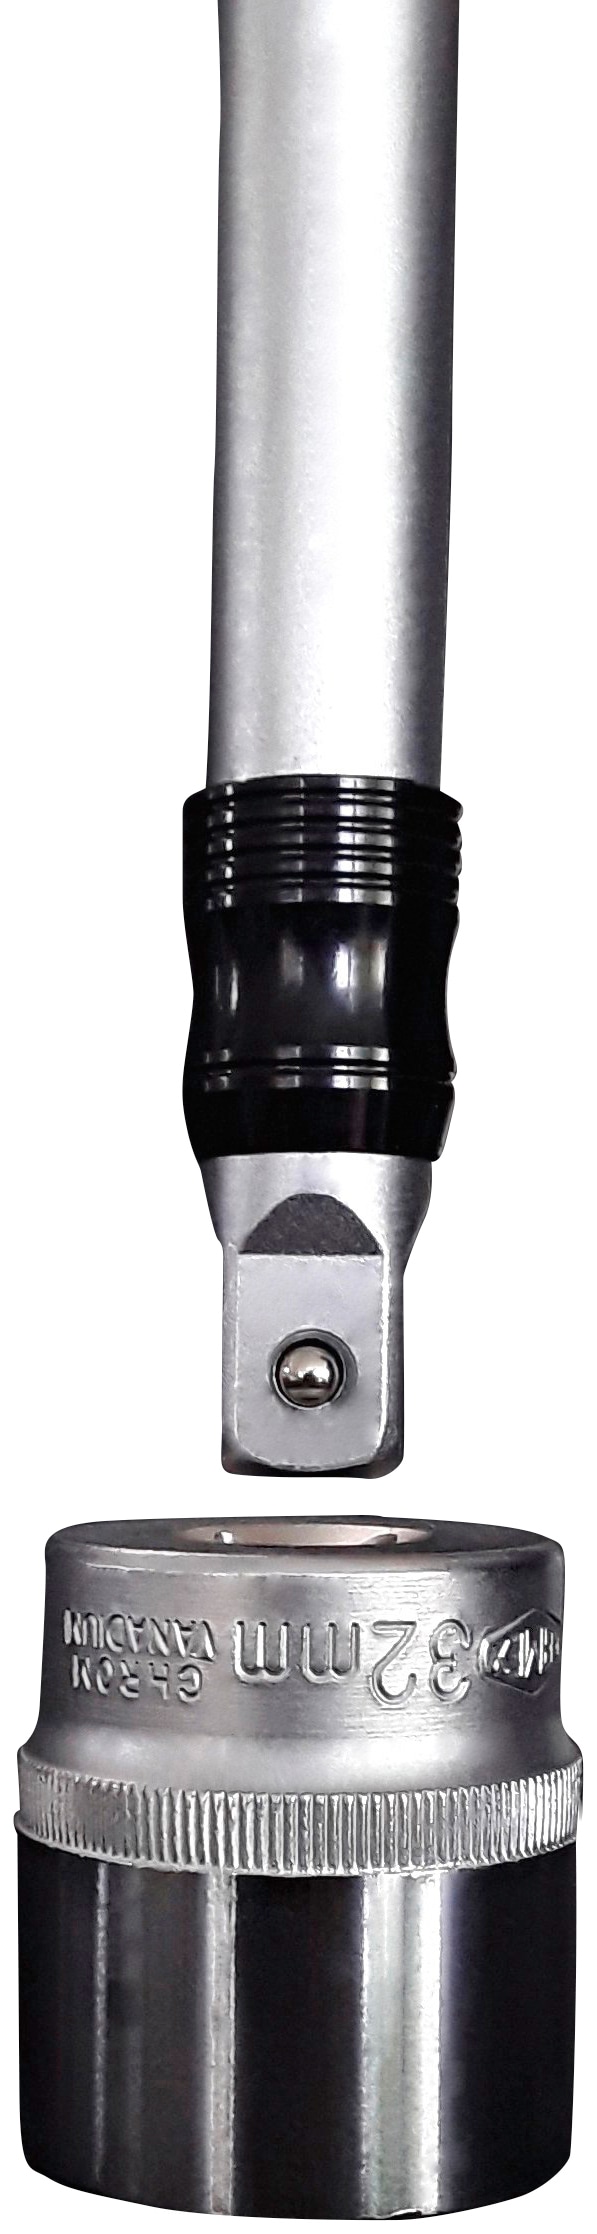 FAMEX Werkzeugset »525-SD-16 - PROFESSIONAL«, (174 tlg.), High-End Steckschlüsselsatz, 108-Zahn-Umschaltknarre, Wellenprofil